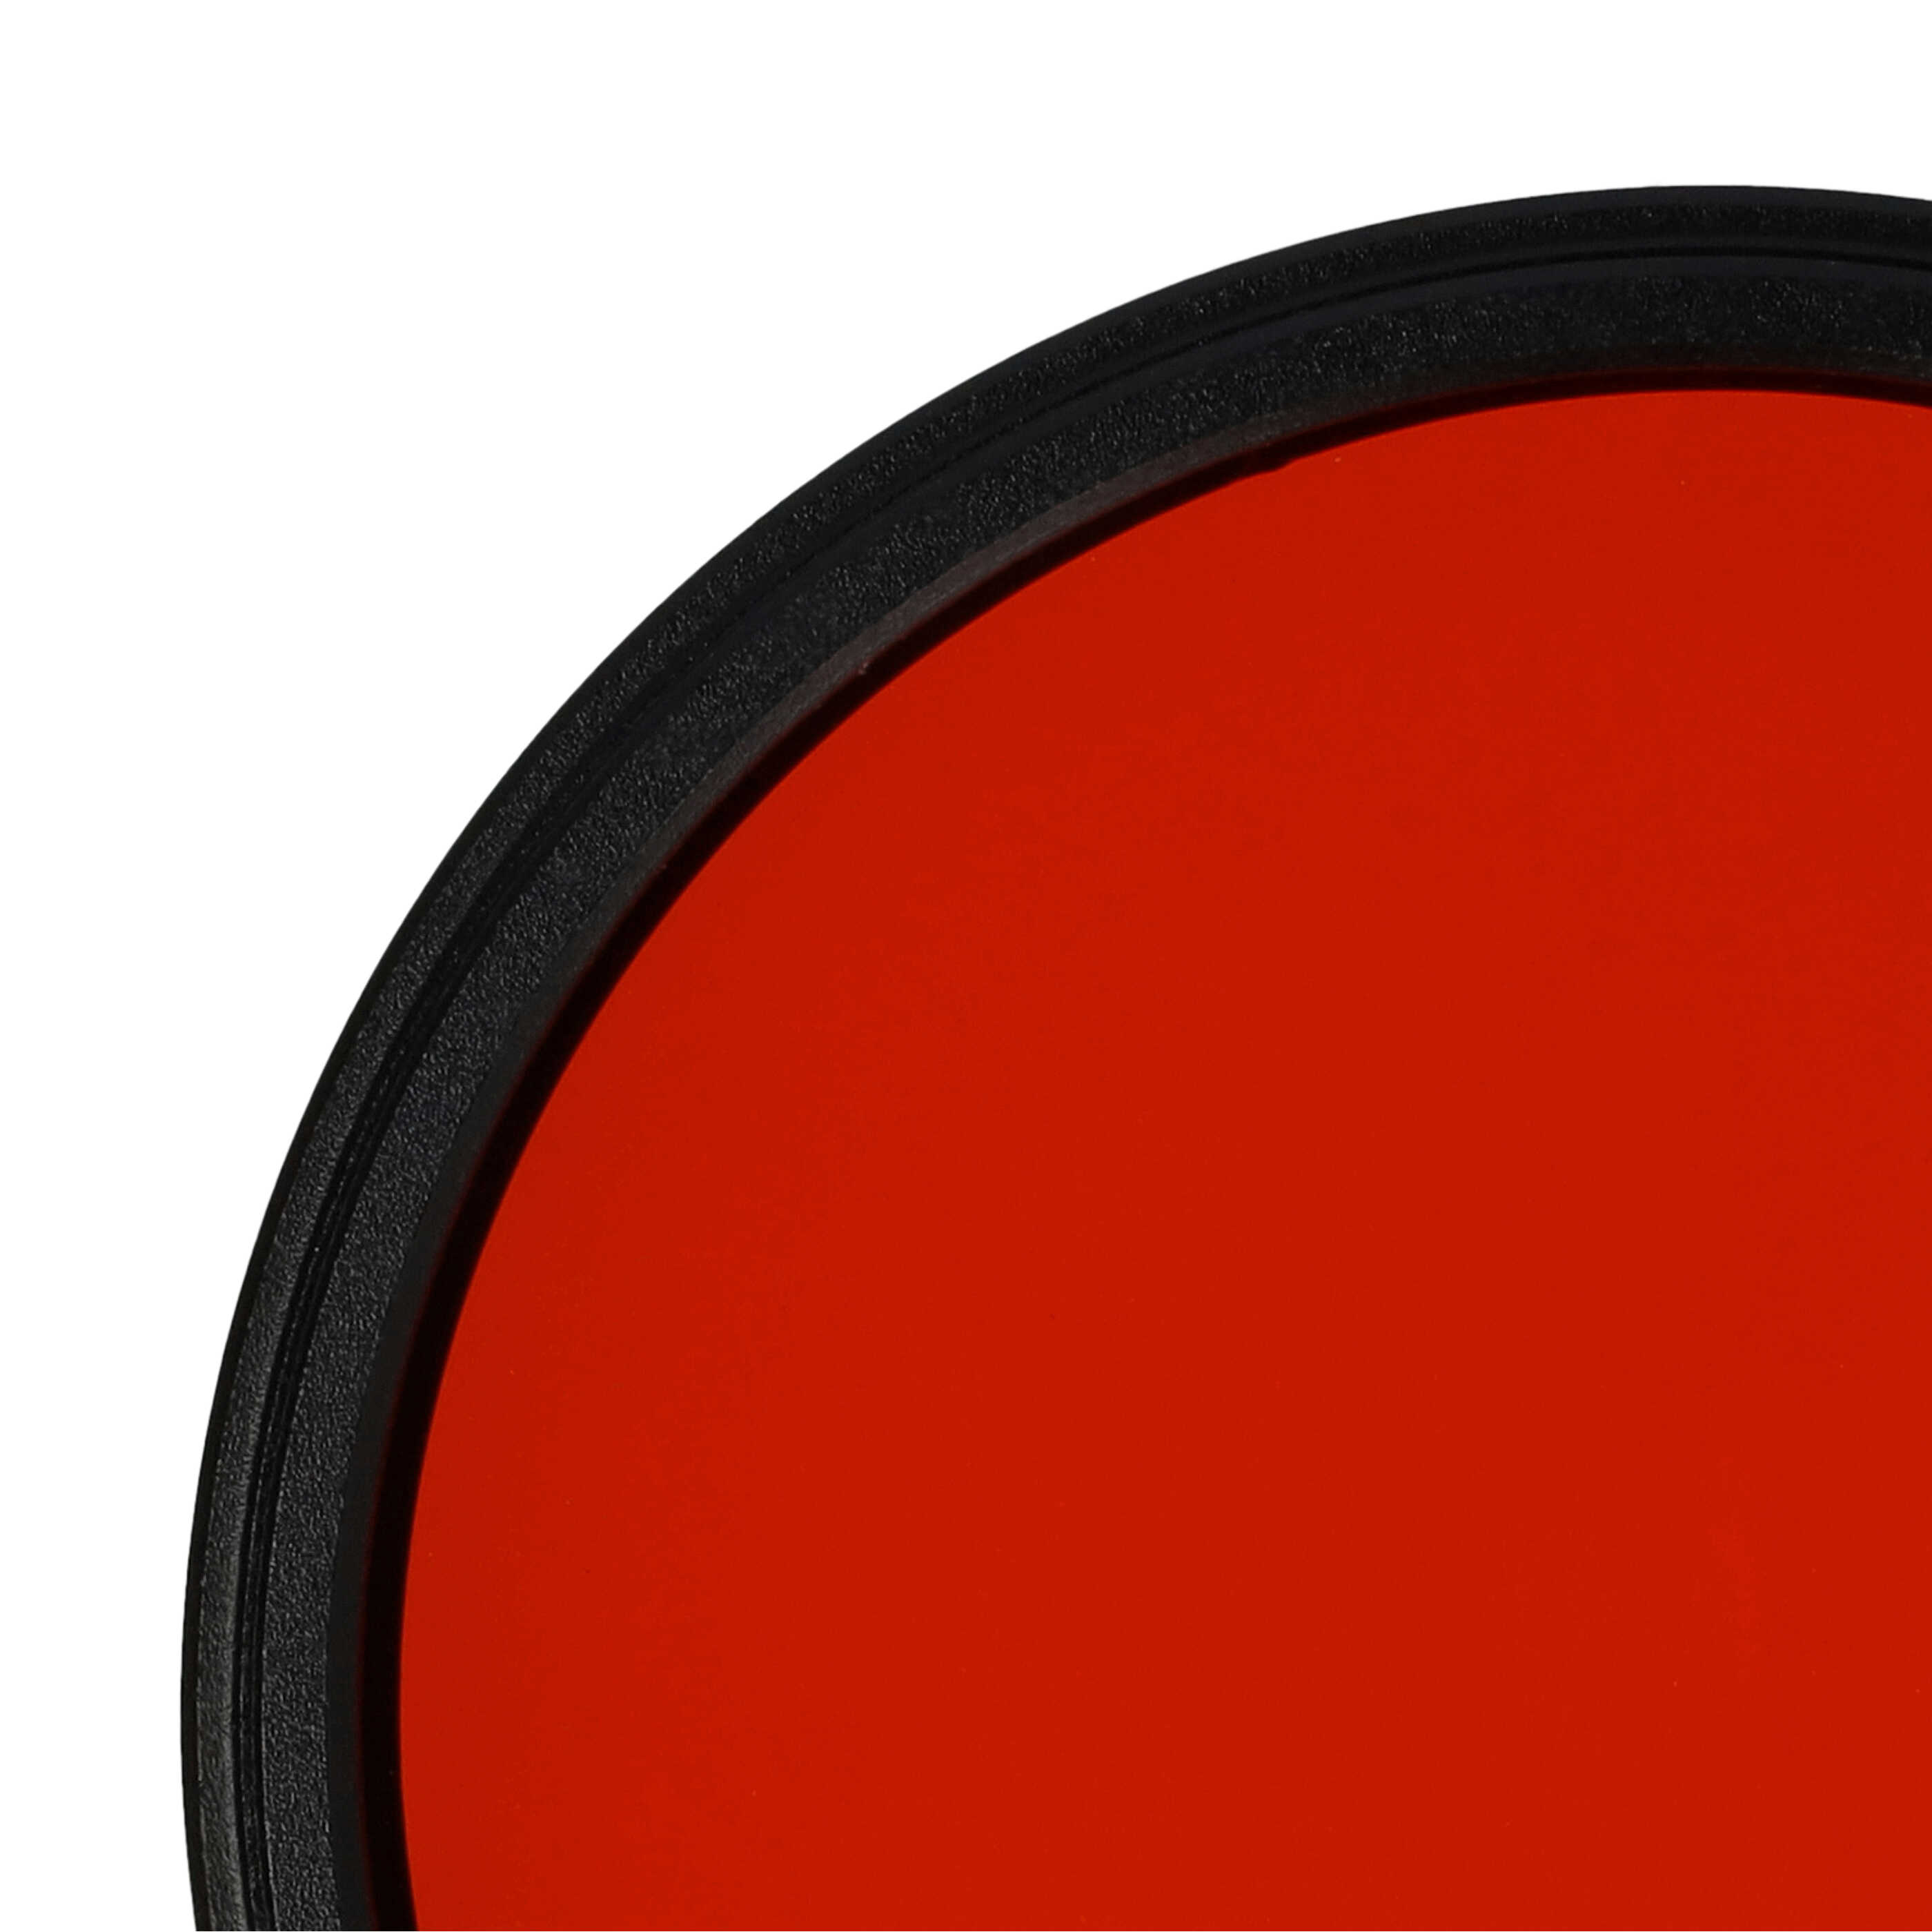 Filtro de color para objetivo de cámara con rosca de filtro de 58 mm - Filtro naranja